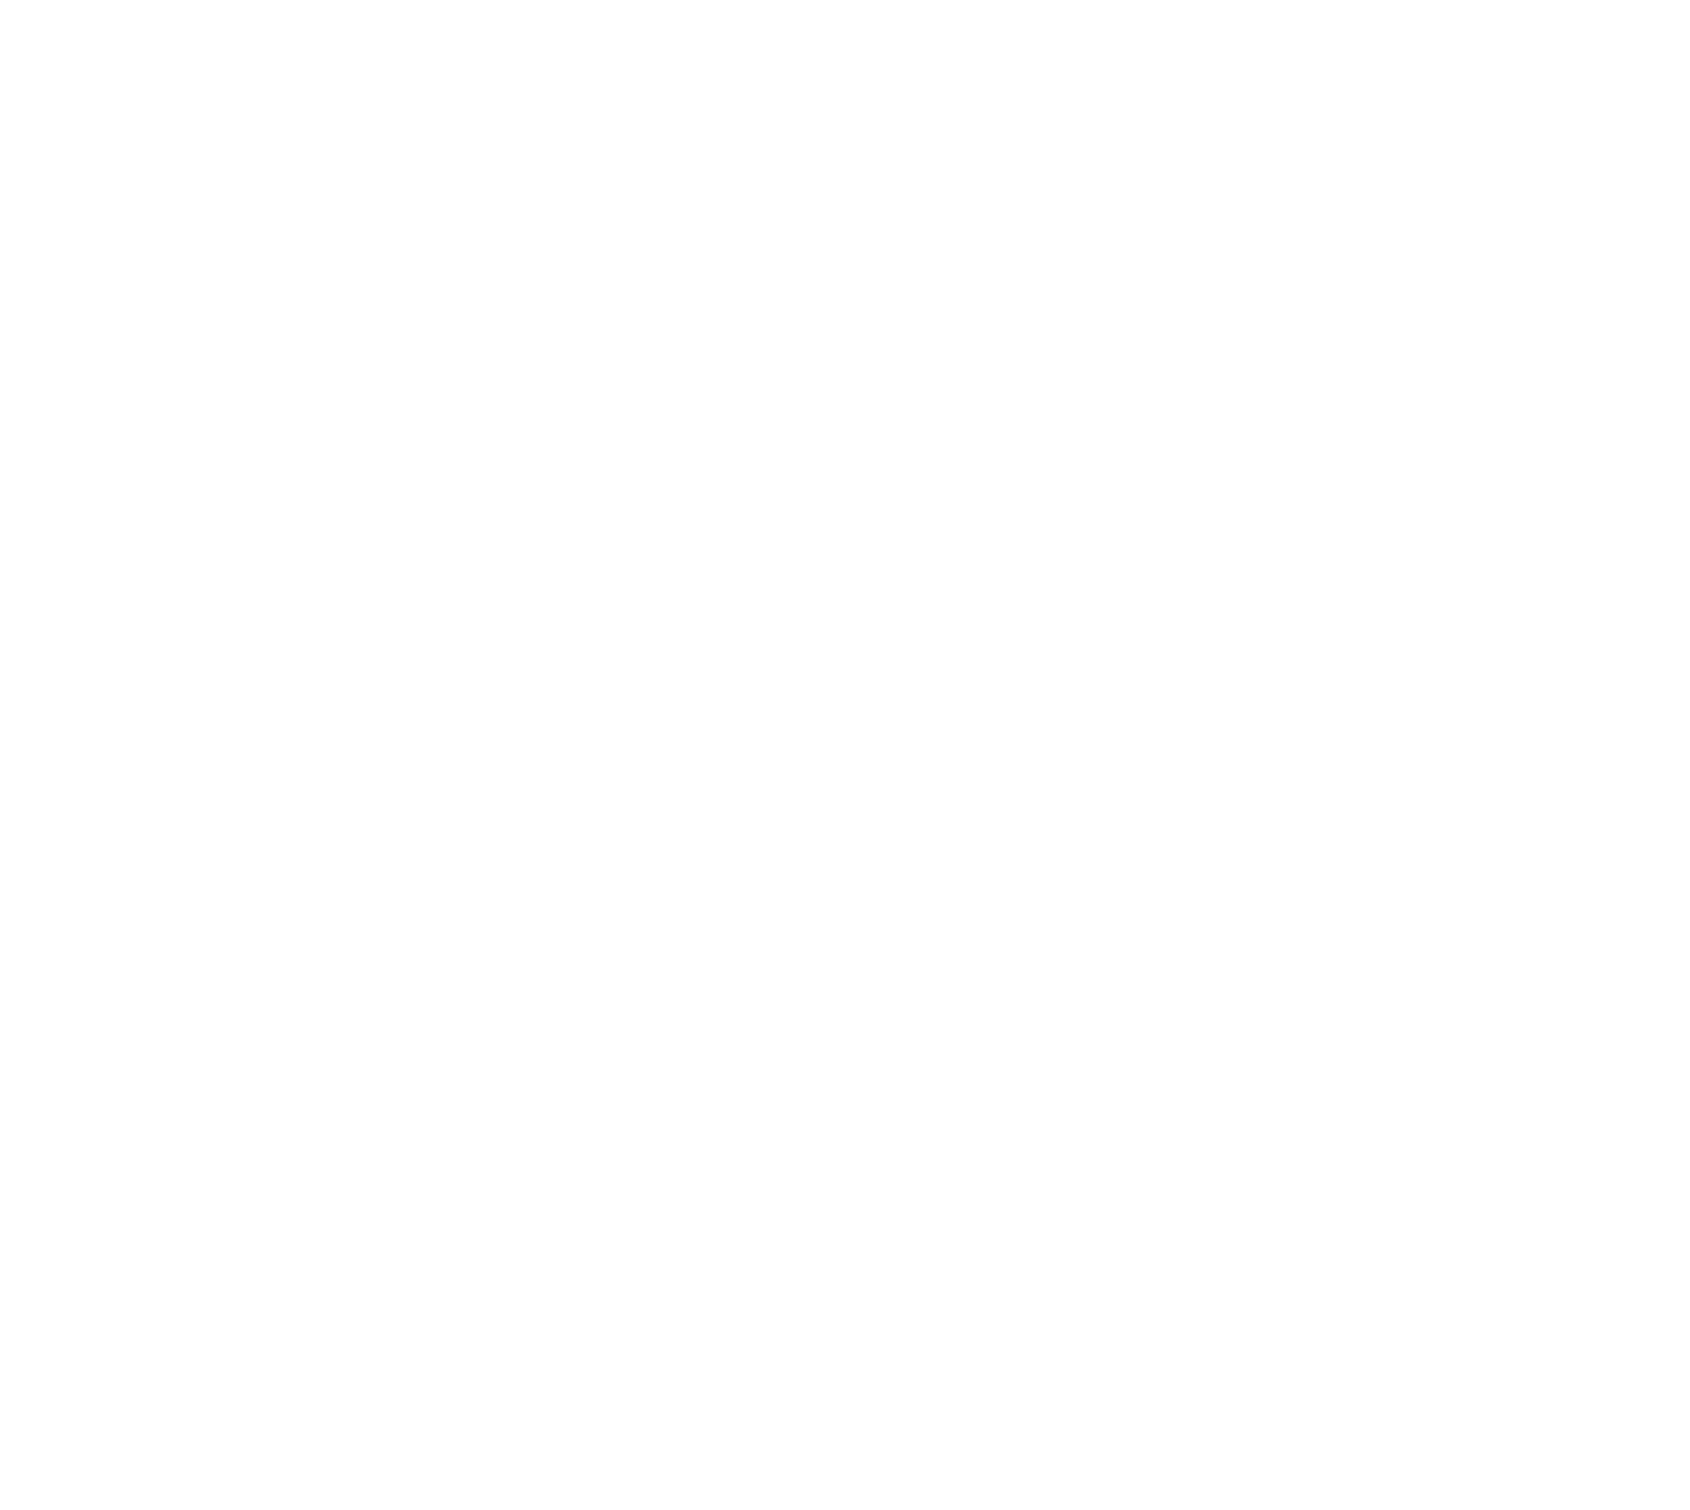 The Shitthropocene